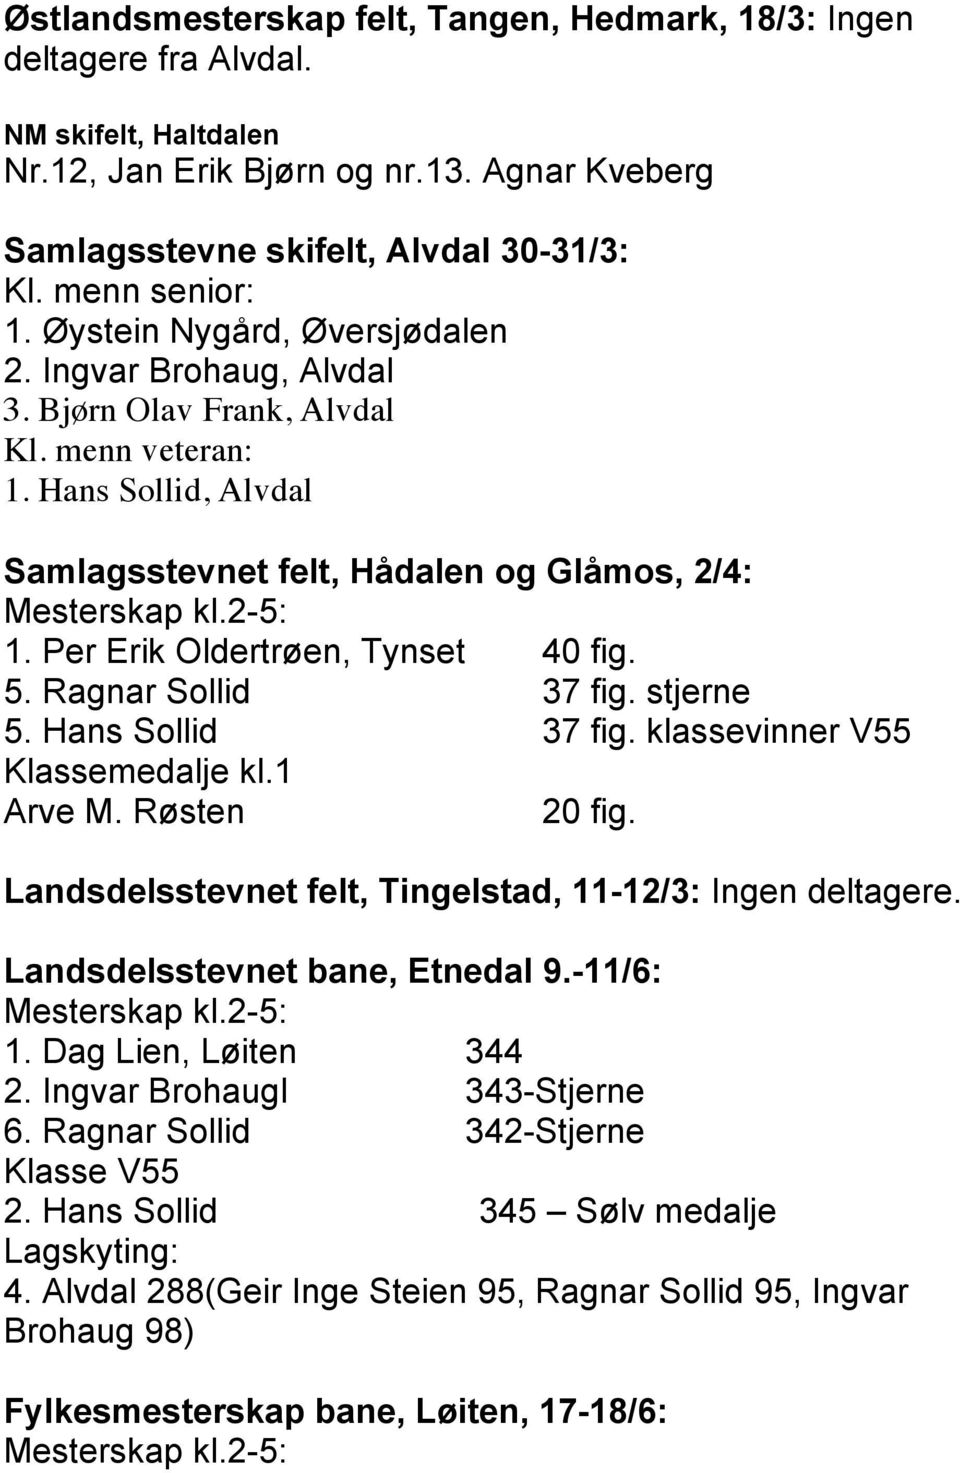 2-5: 1. Per Erik Oldertrøen, Tynset 40 fig. 5. Ragnar Sollid 37 fig. stjerne 5. Hans Sollid 37 fig. klassevinner V55 Klassemedalje kl.1 Arve M. Røsten 20 fig.